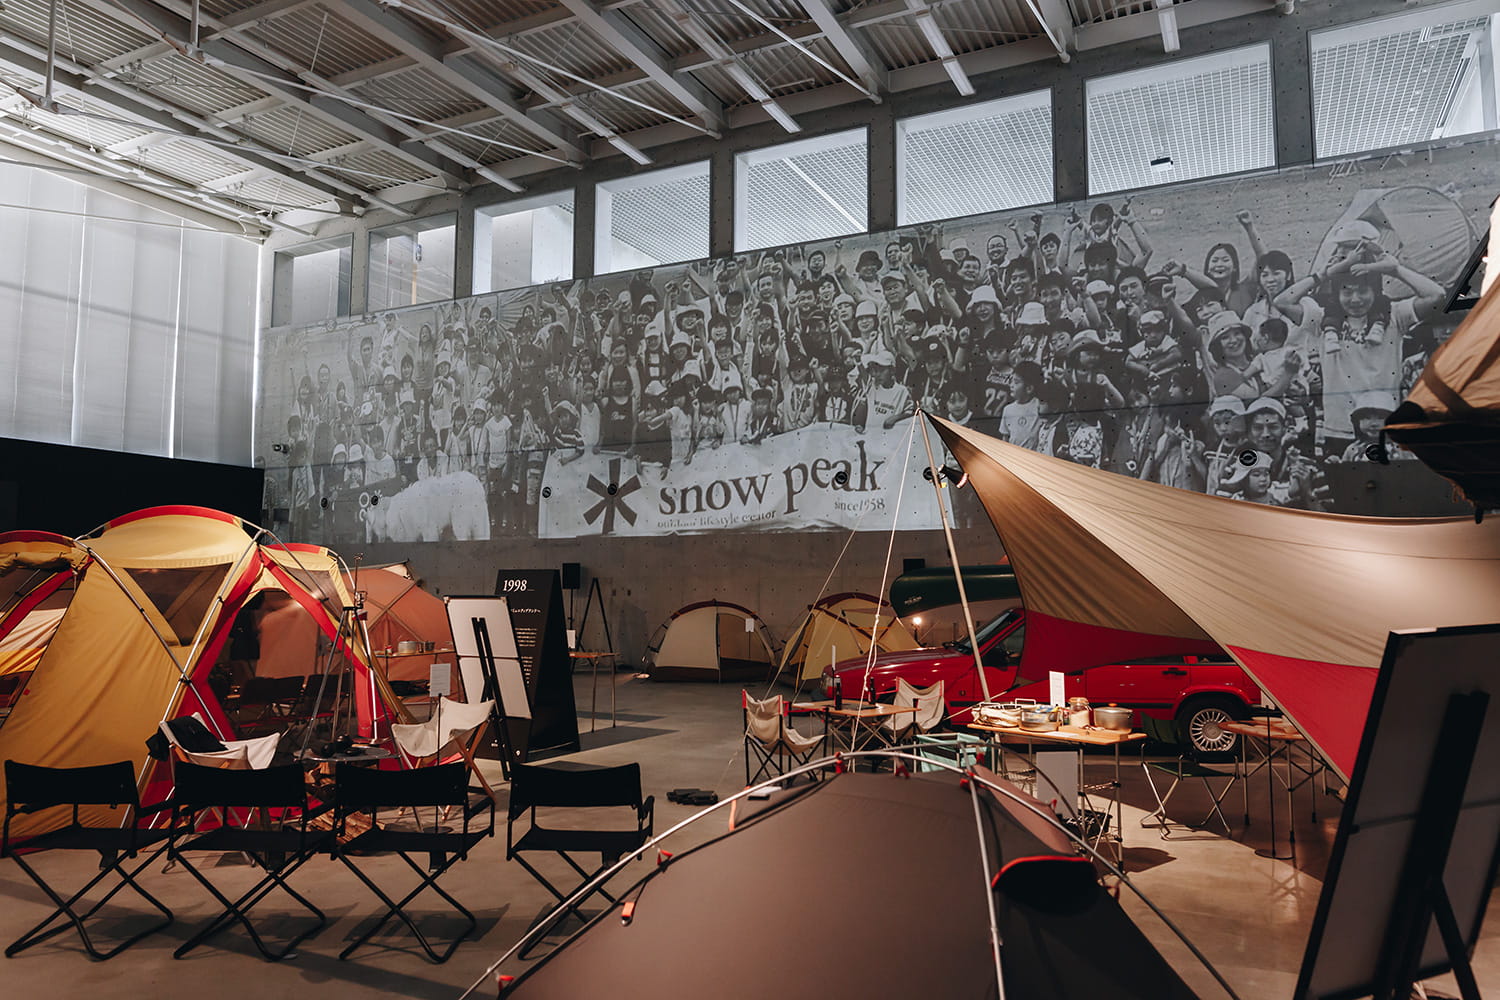 「MUSEUM」見学ではスタッフのご案内のもと、スノーピークの60年の歩みをご紹介します。